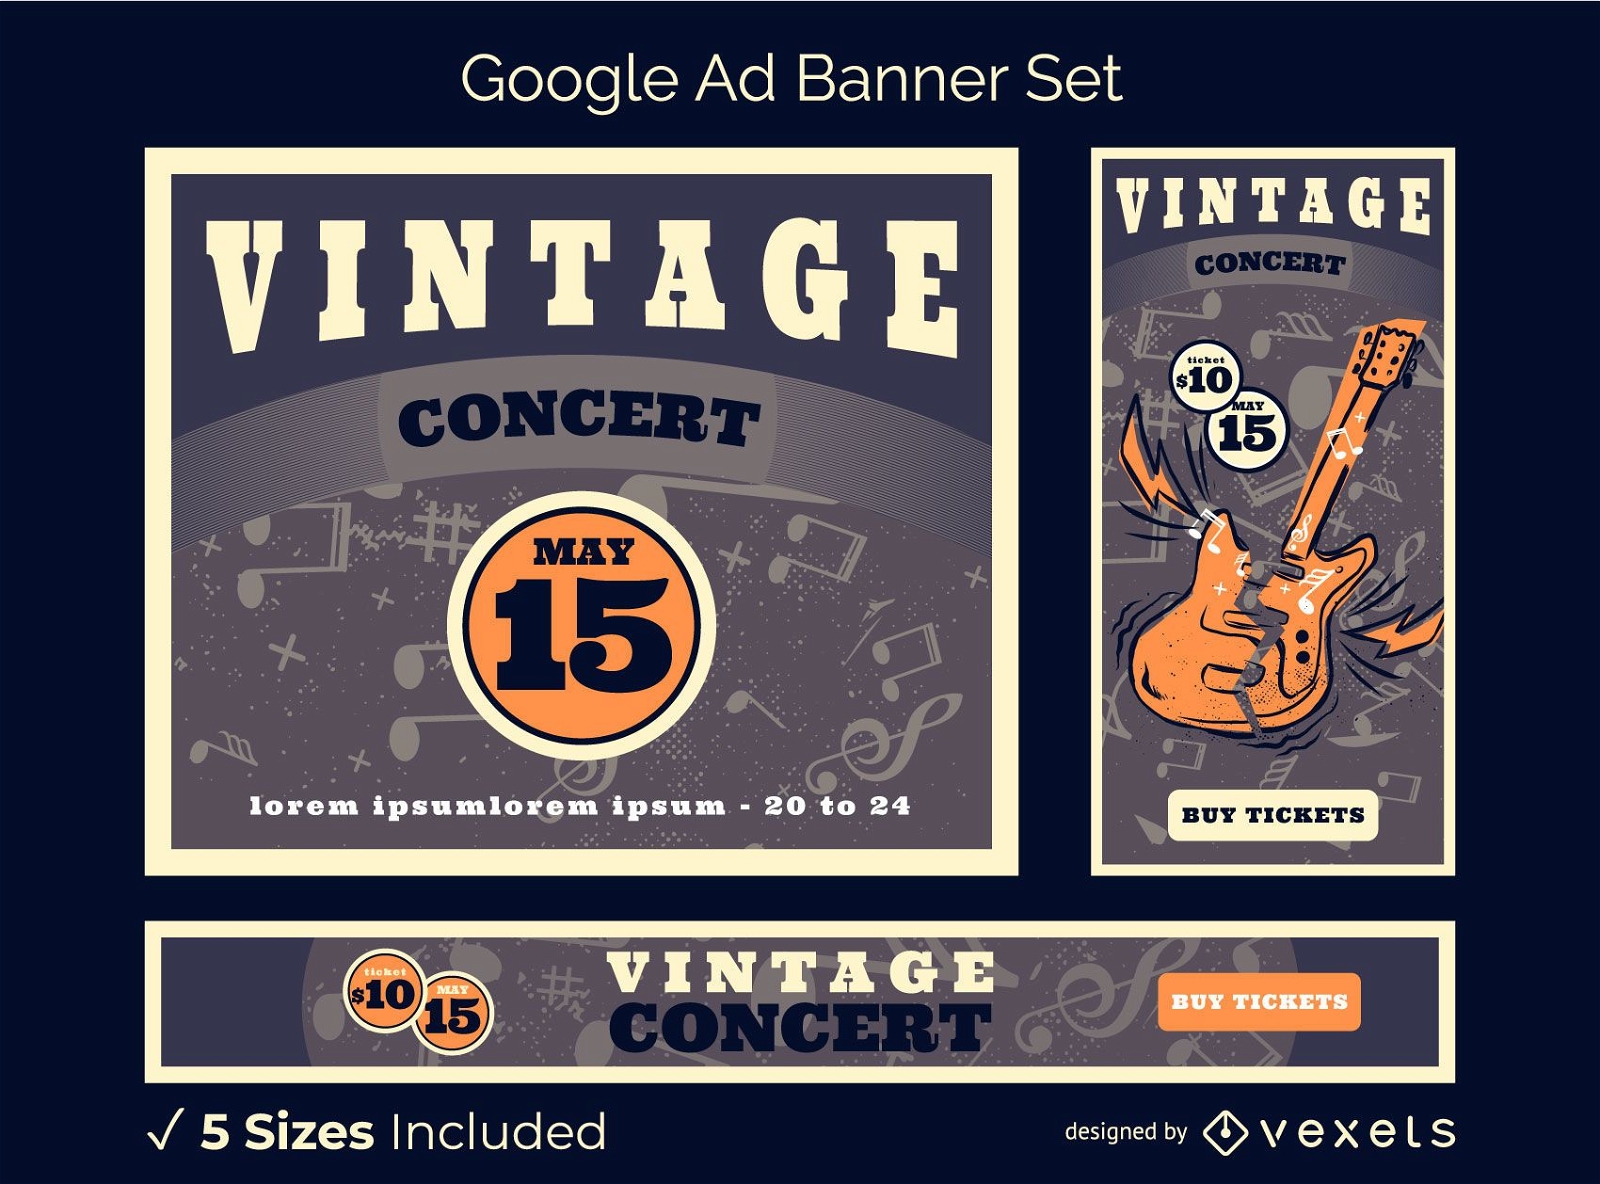 Paquete de banners de Google Ads de conciertos vintage